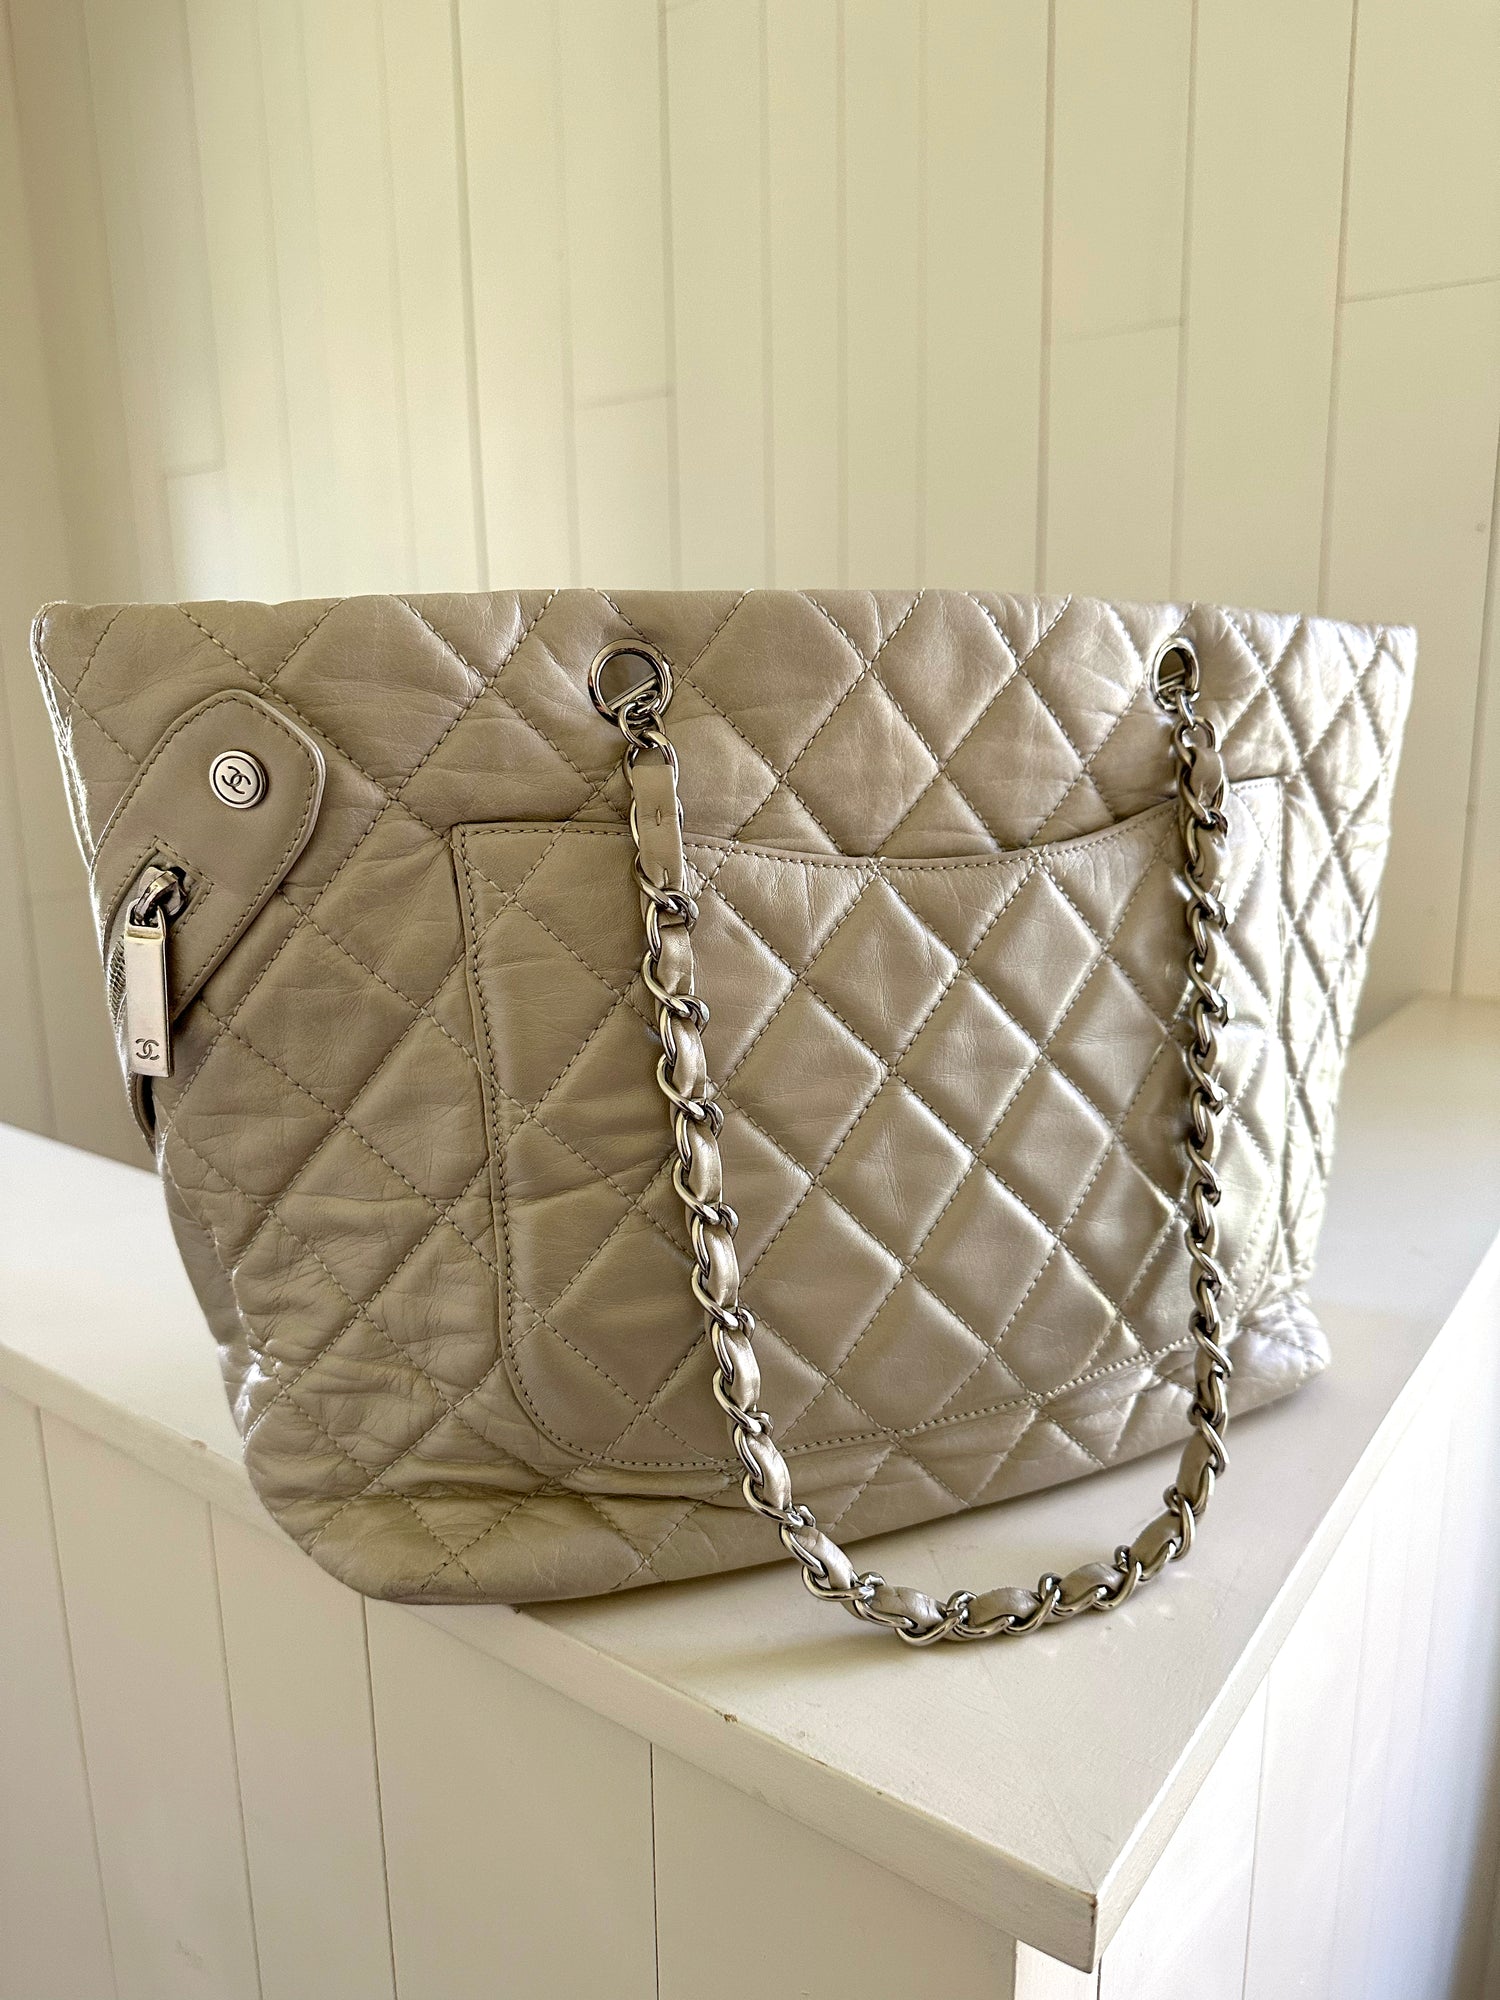 Buy Chanel Cotton Handbag